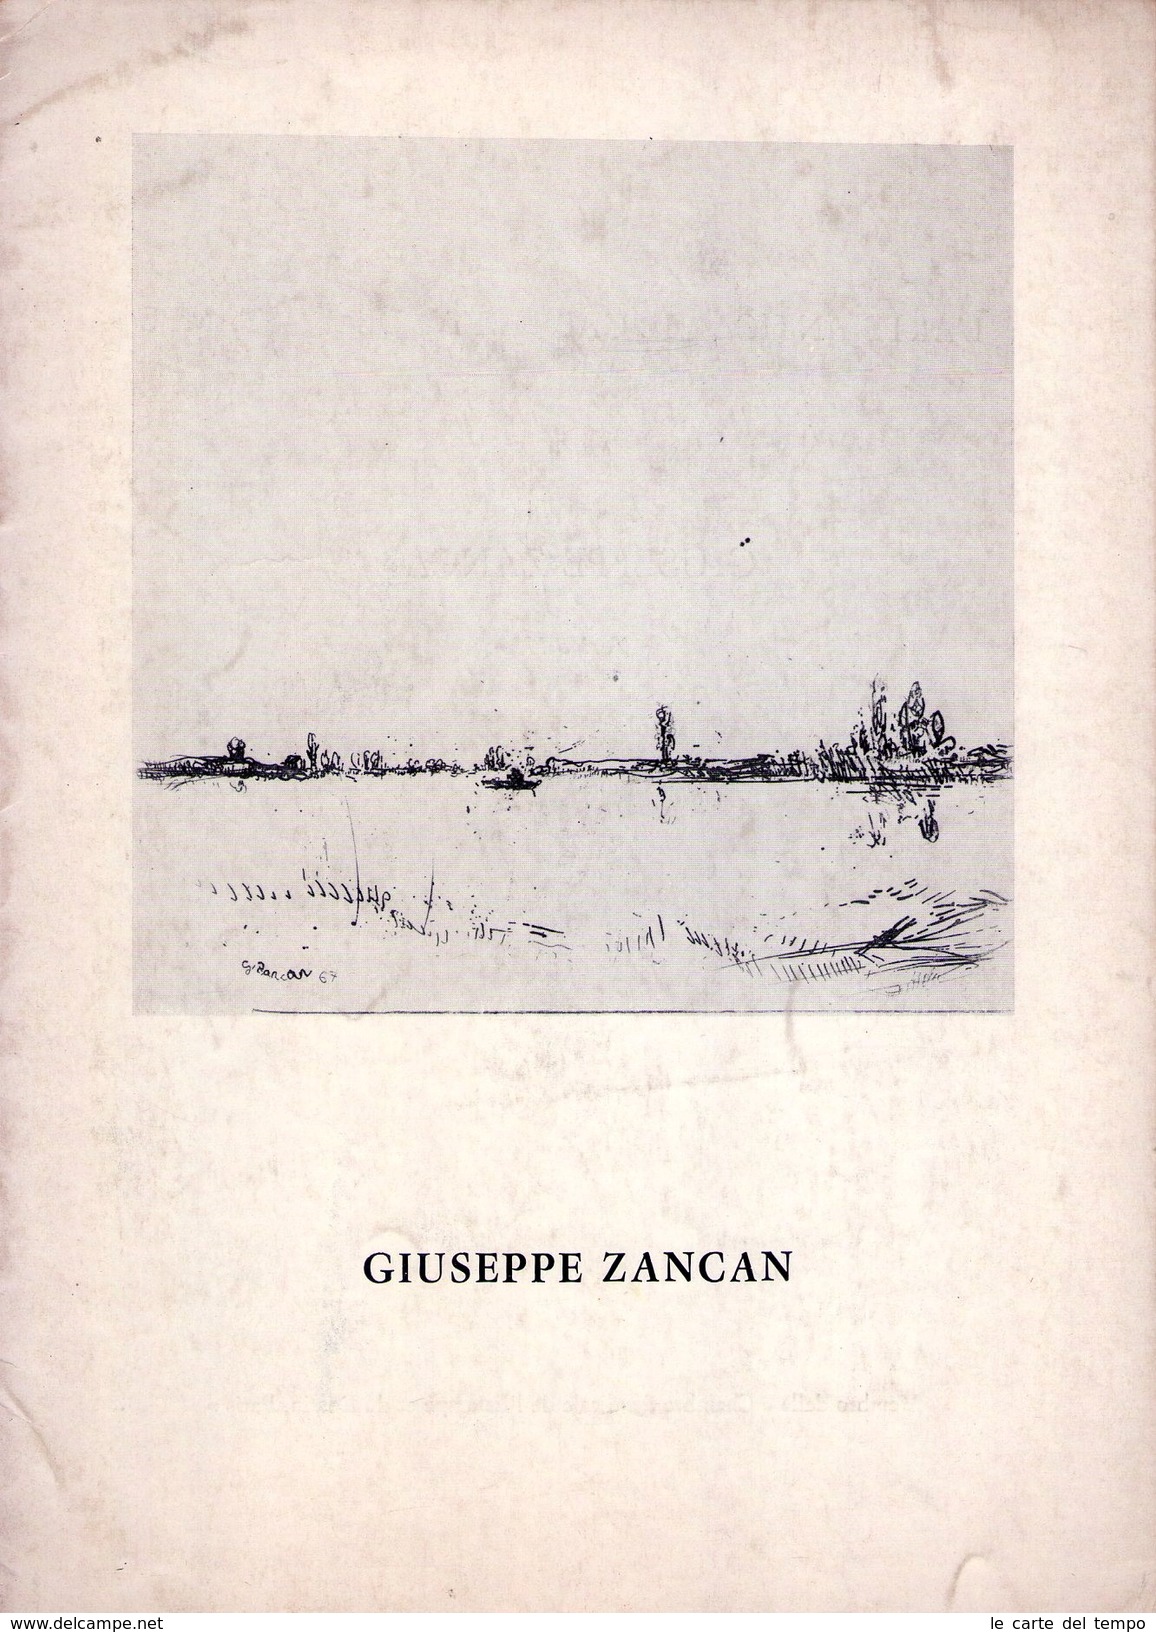 Catalogo Mostra GIUSEPPE ZANCAN. L'Arte Antica - Il Gabinetto Delle Stampe Torino 1936 - Arte, Architettura